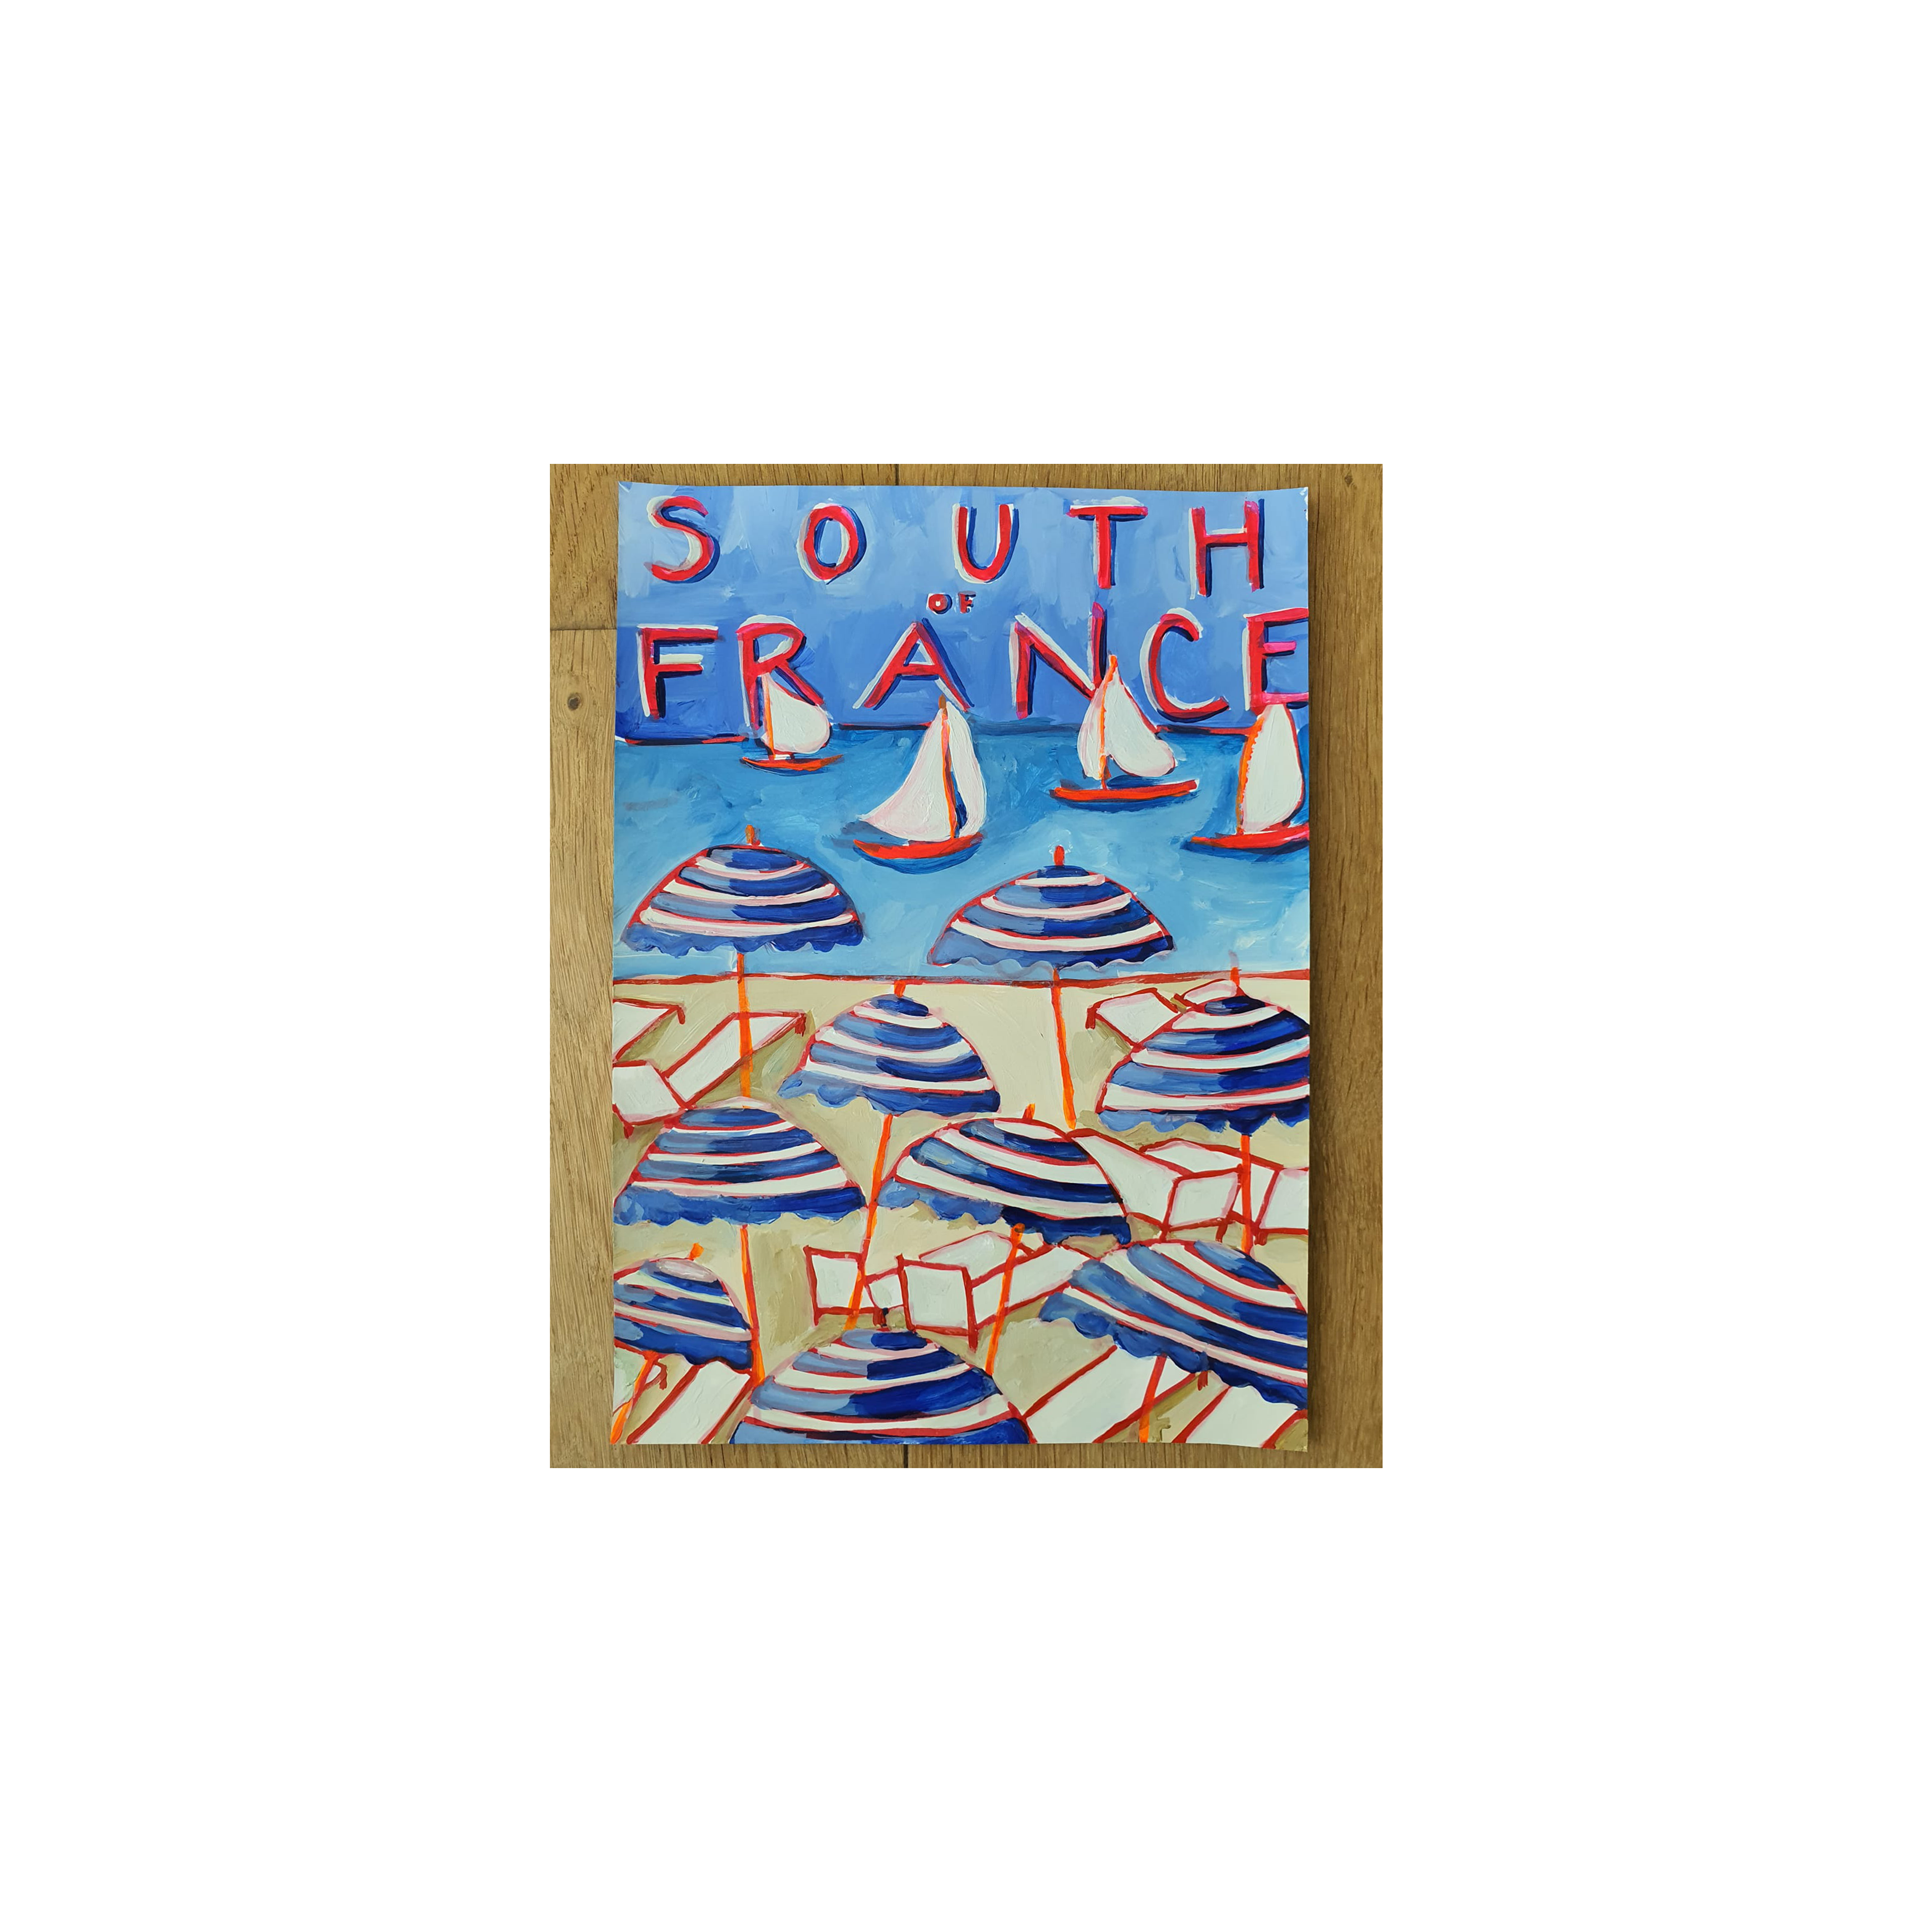 South of France - Original